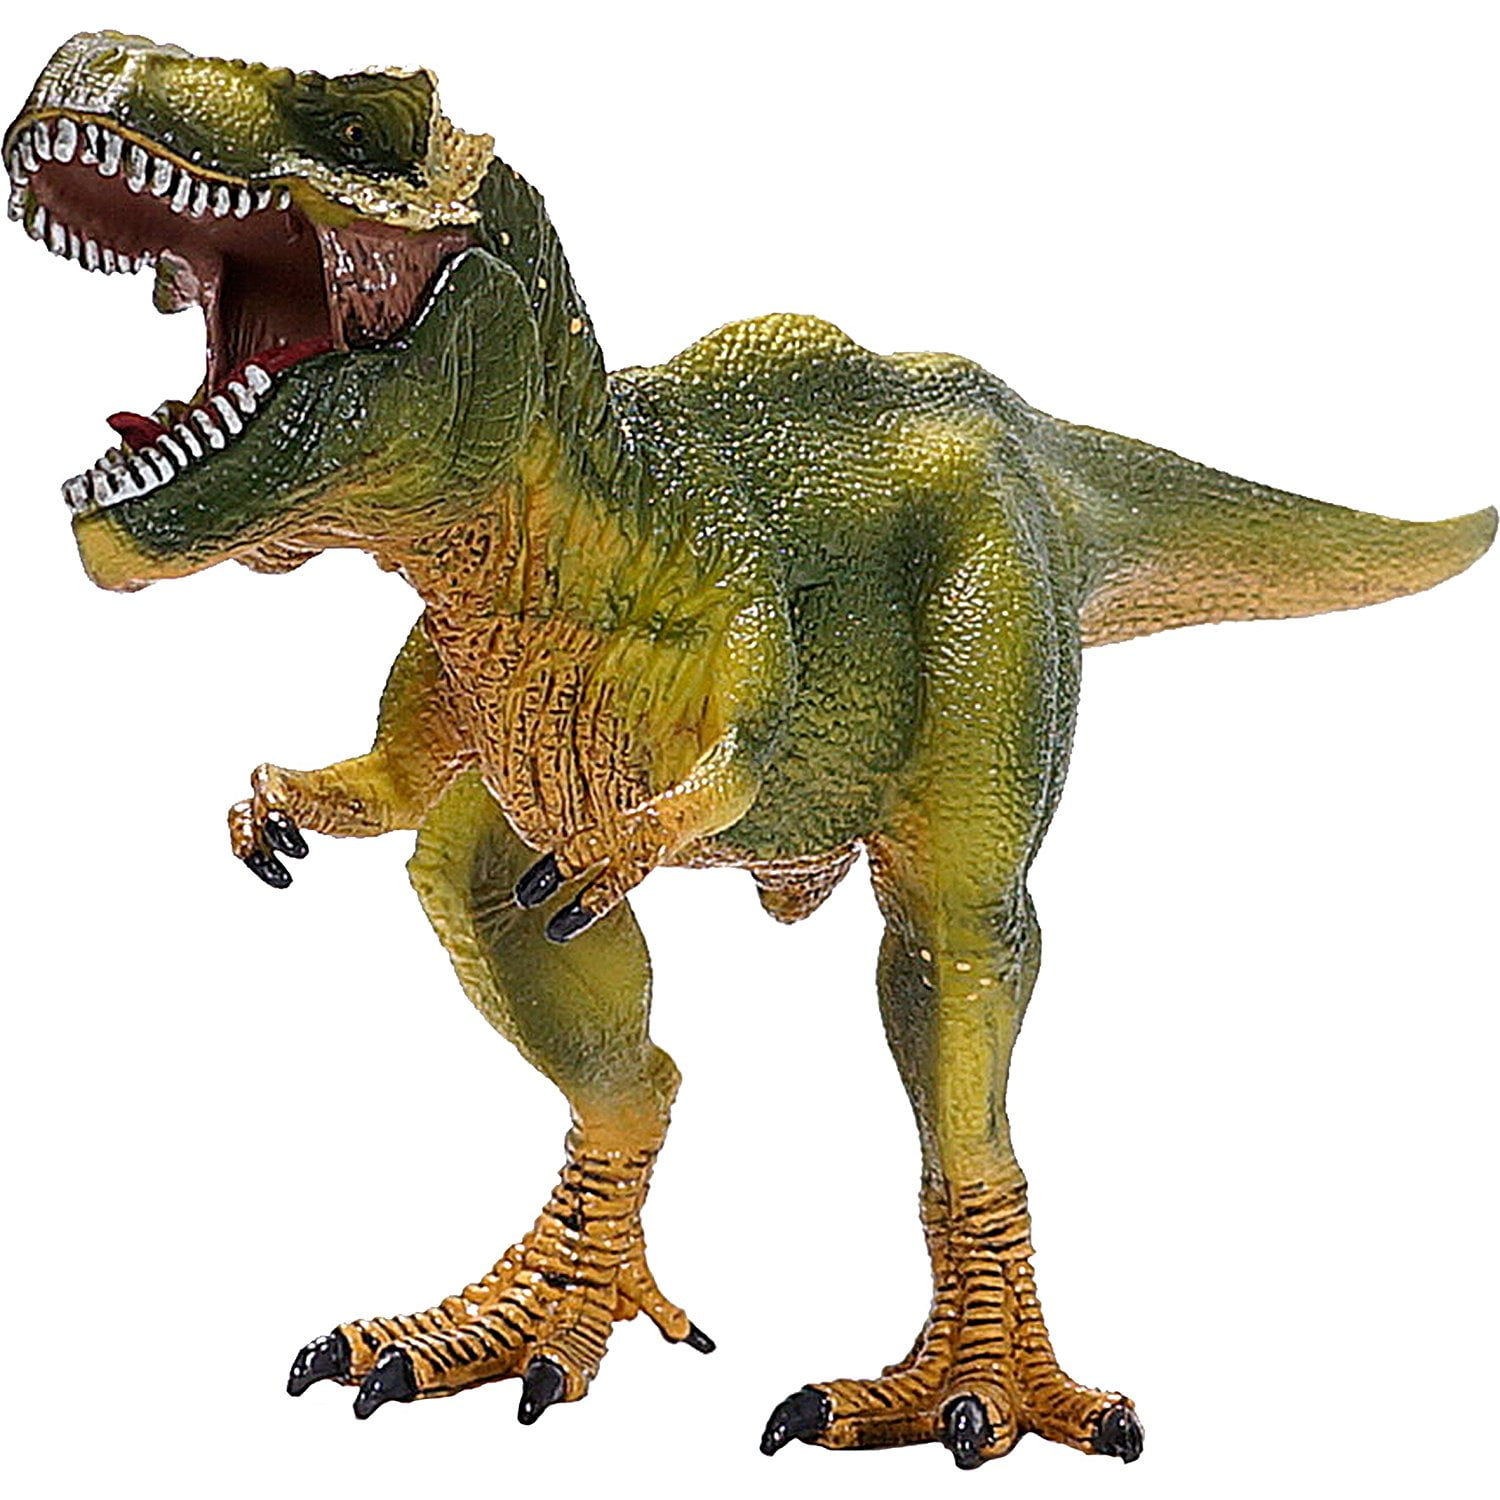 action figure dinosaur